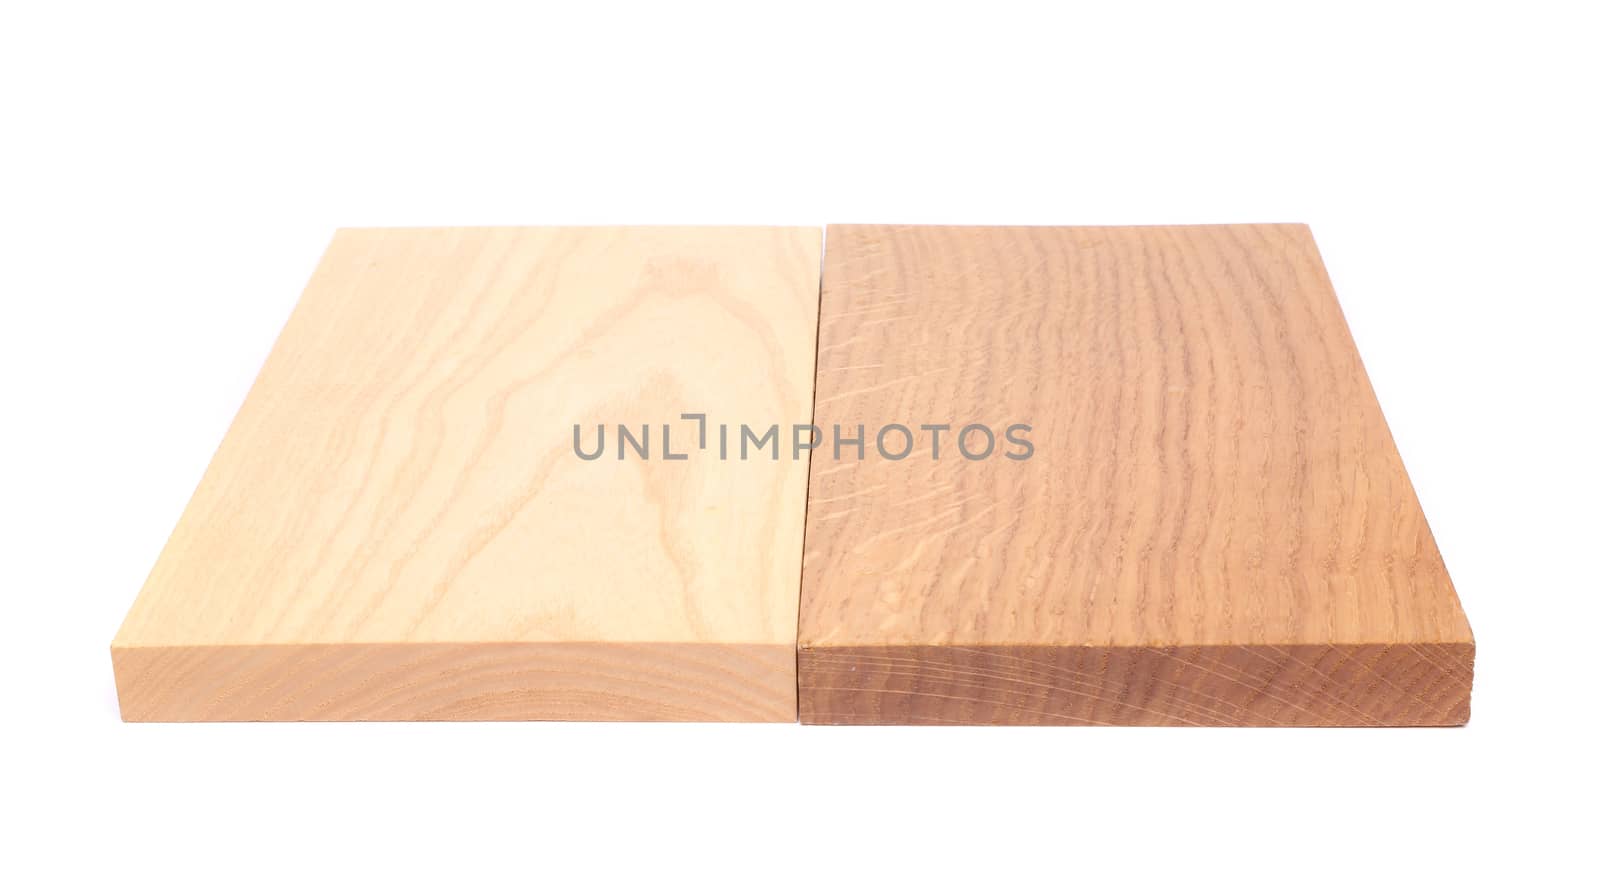 Two boards (elm, oak)